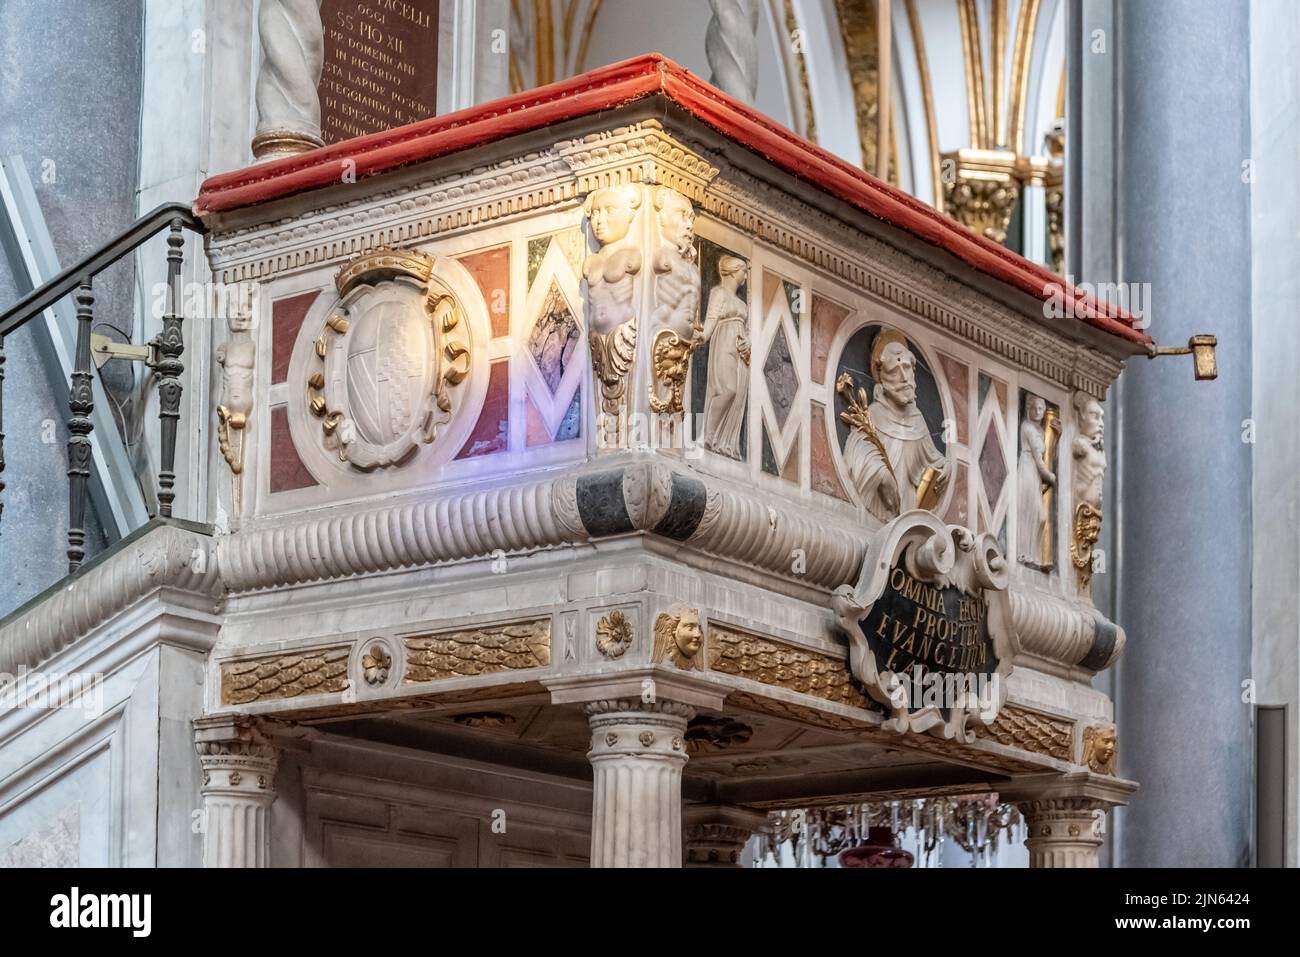 Nahaufnahme einer geschmückten Kanzel in der katholischen Kirche in Neapel, Italien Stockfoto